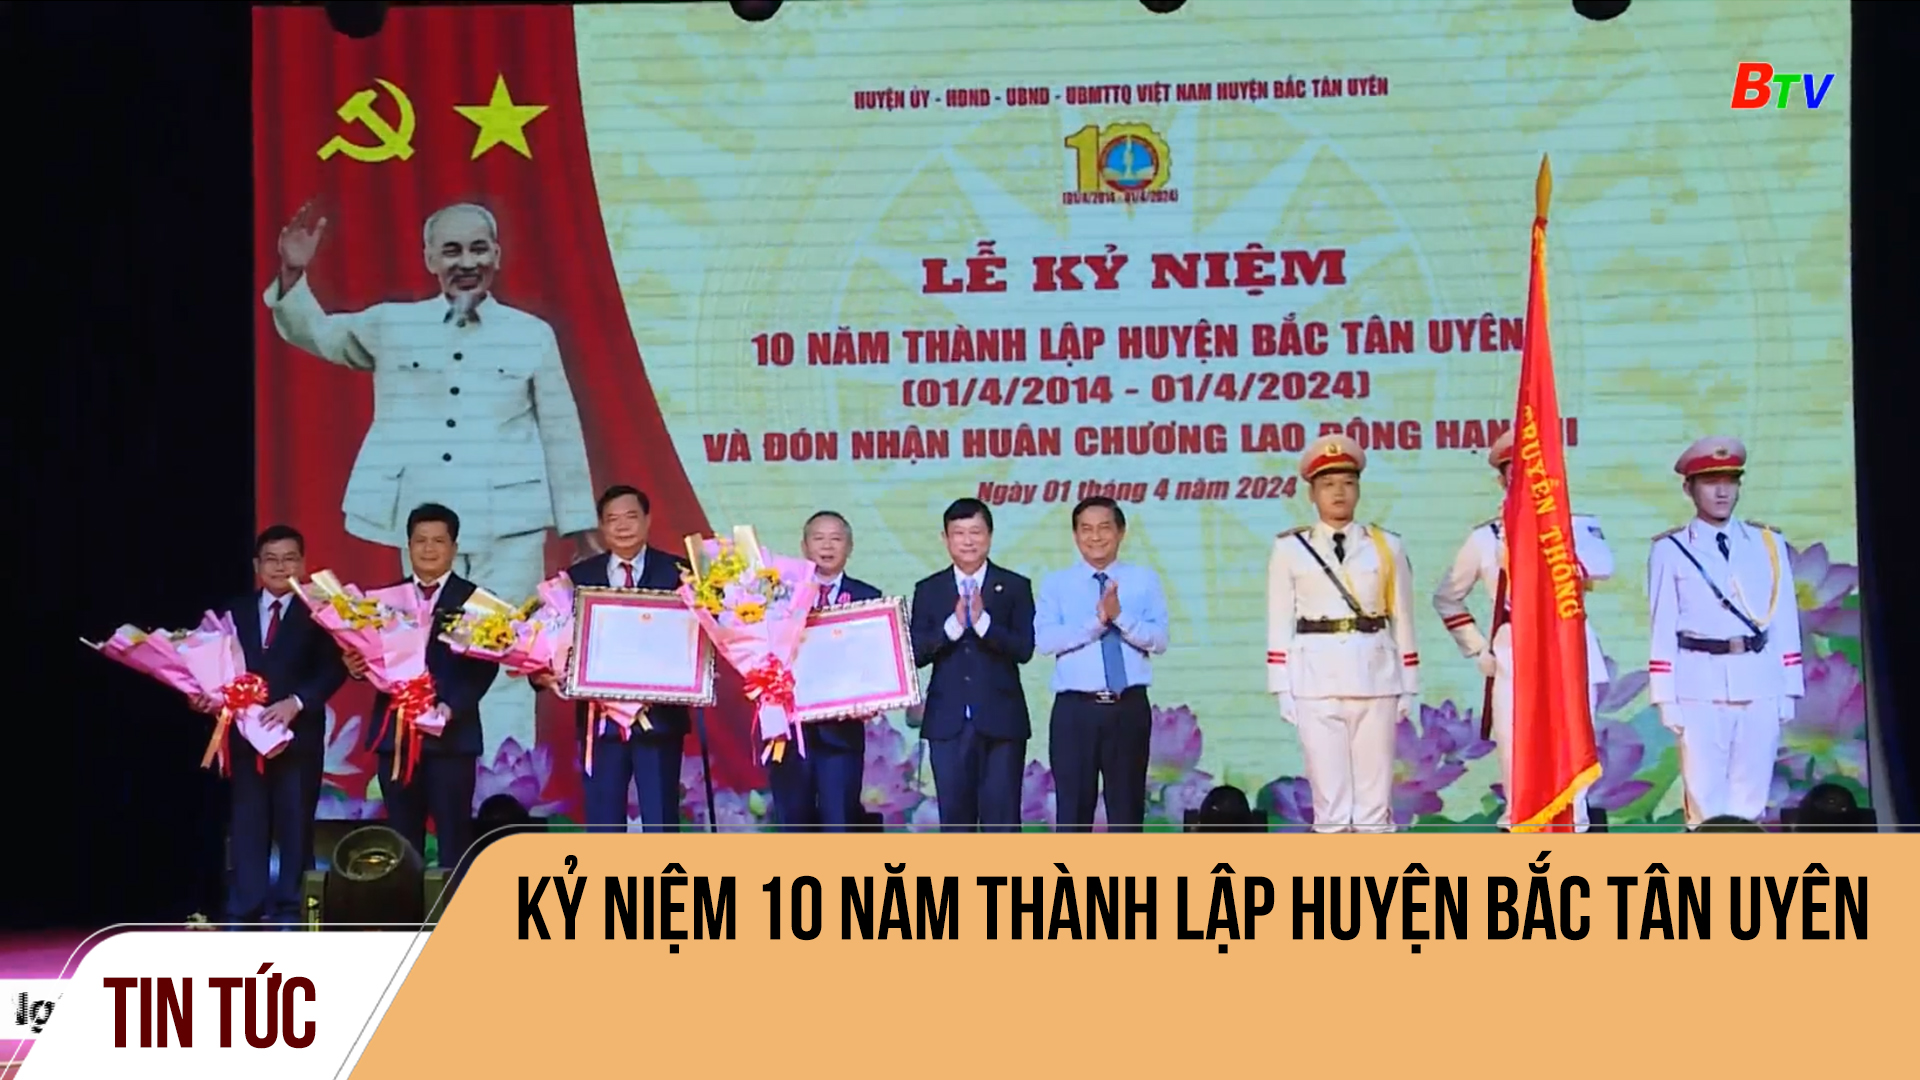 Kỷ niệm 10 năm thành lập huyện Bắc Tân Uyên